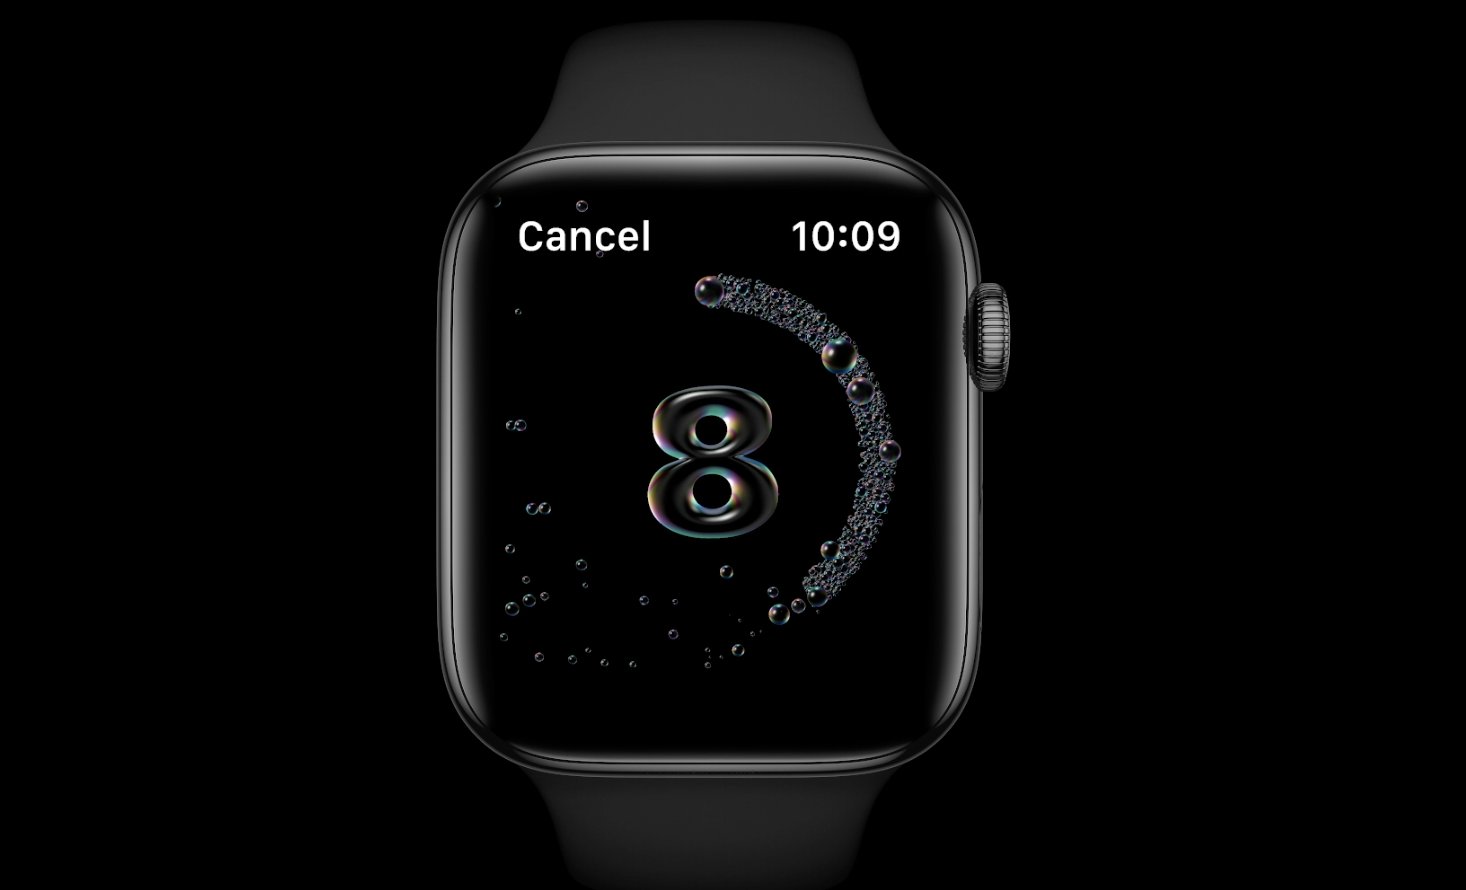 تحديث watchOS 7 ، تحميل الإصدار التجريبي ، المميزات ، و ساعات Apple المدعومة